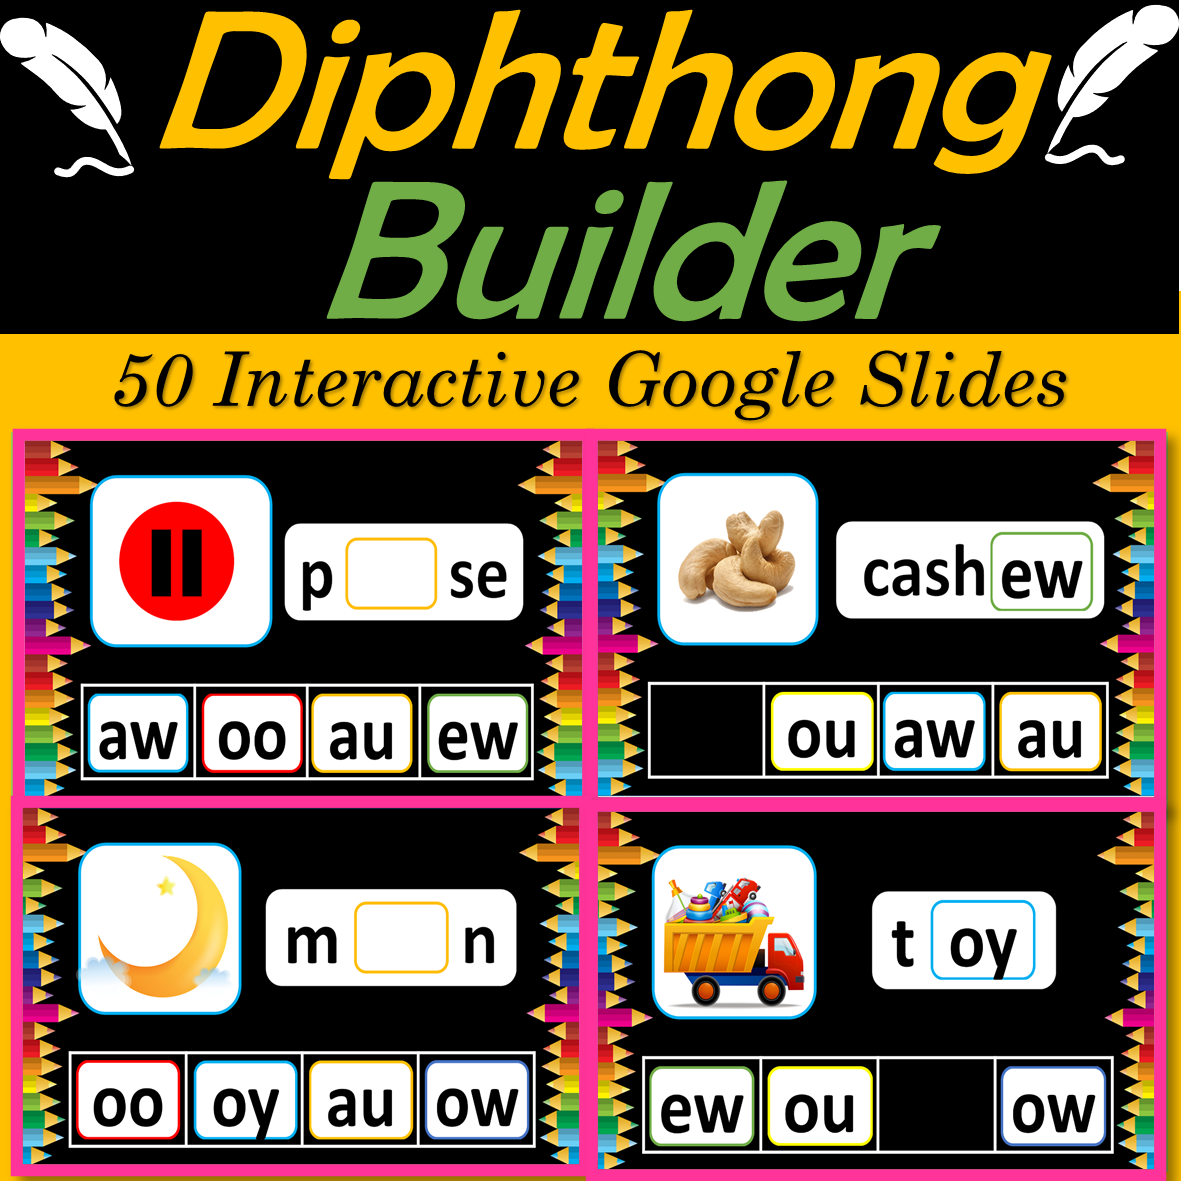 Diphthongs Builder AW, AU, EW, OO, OY, OI, OW, OU - 50 Google Slides